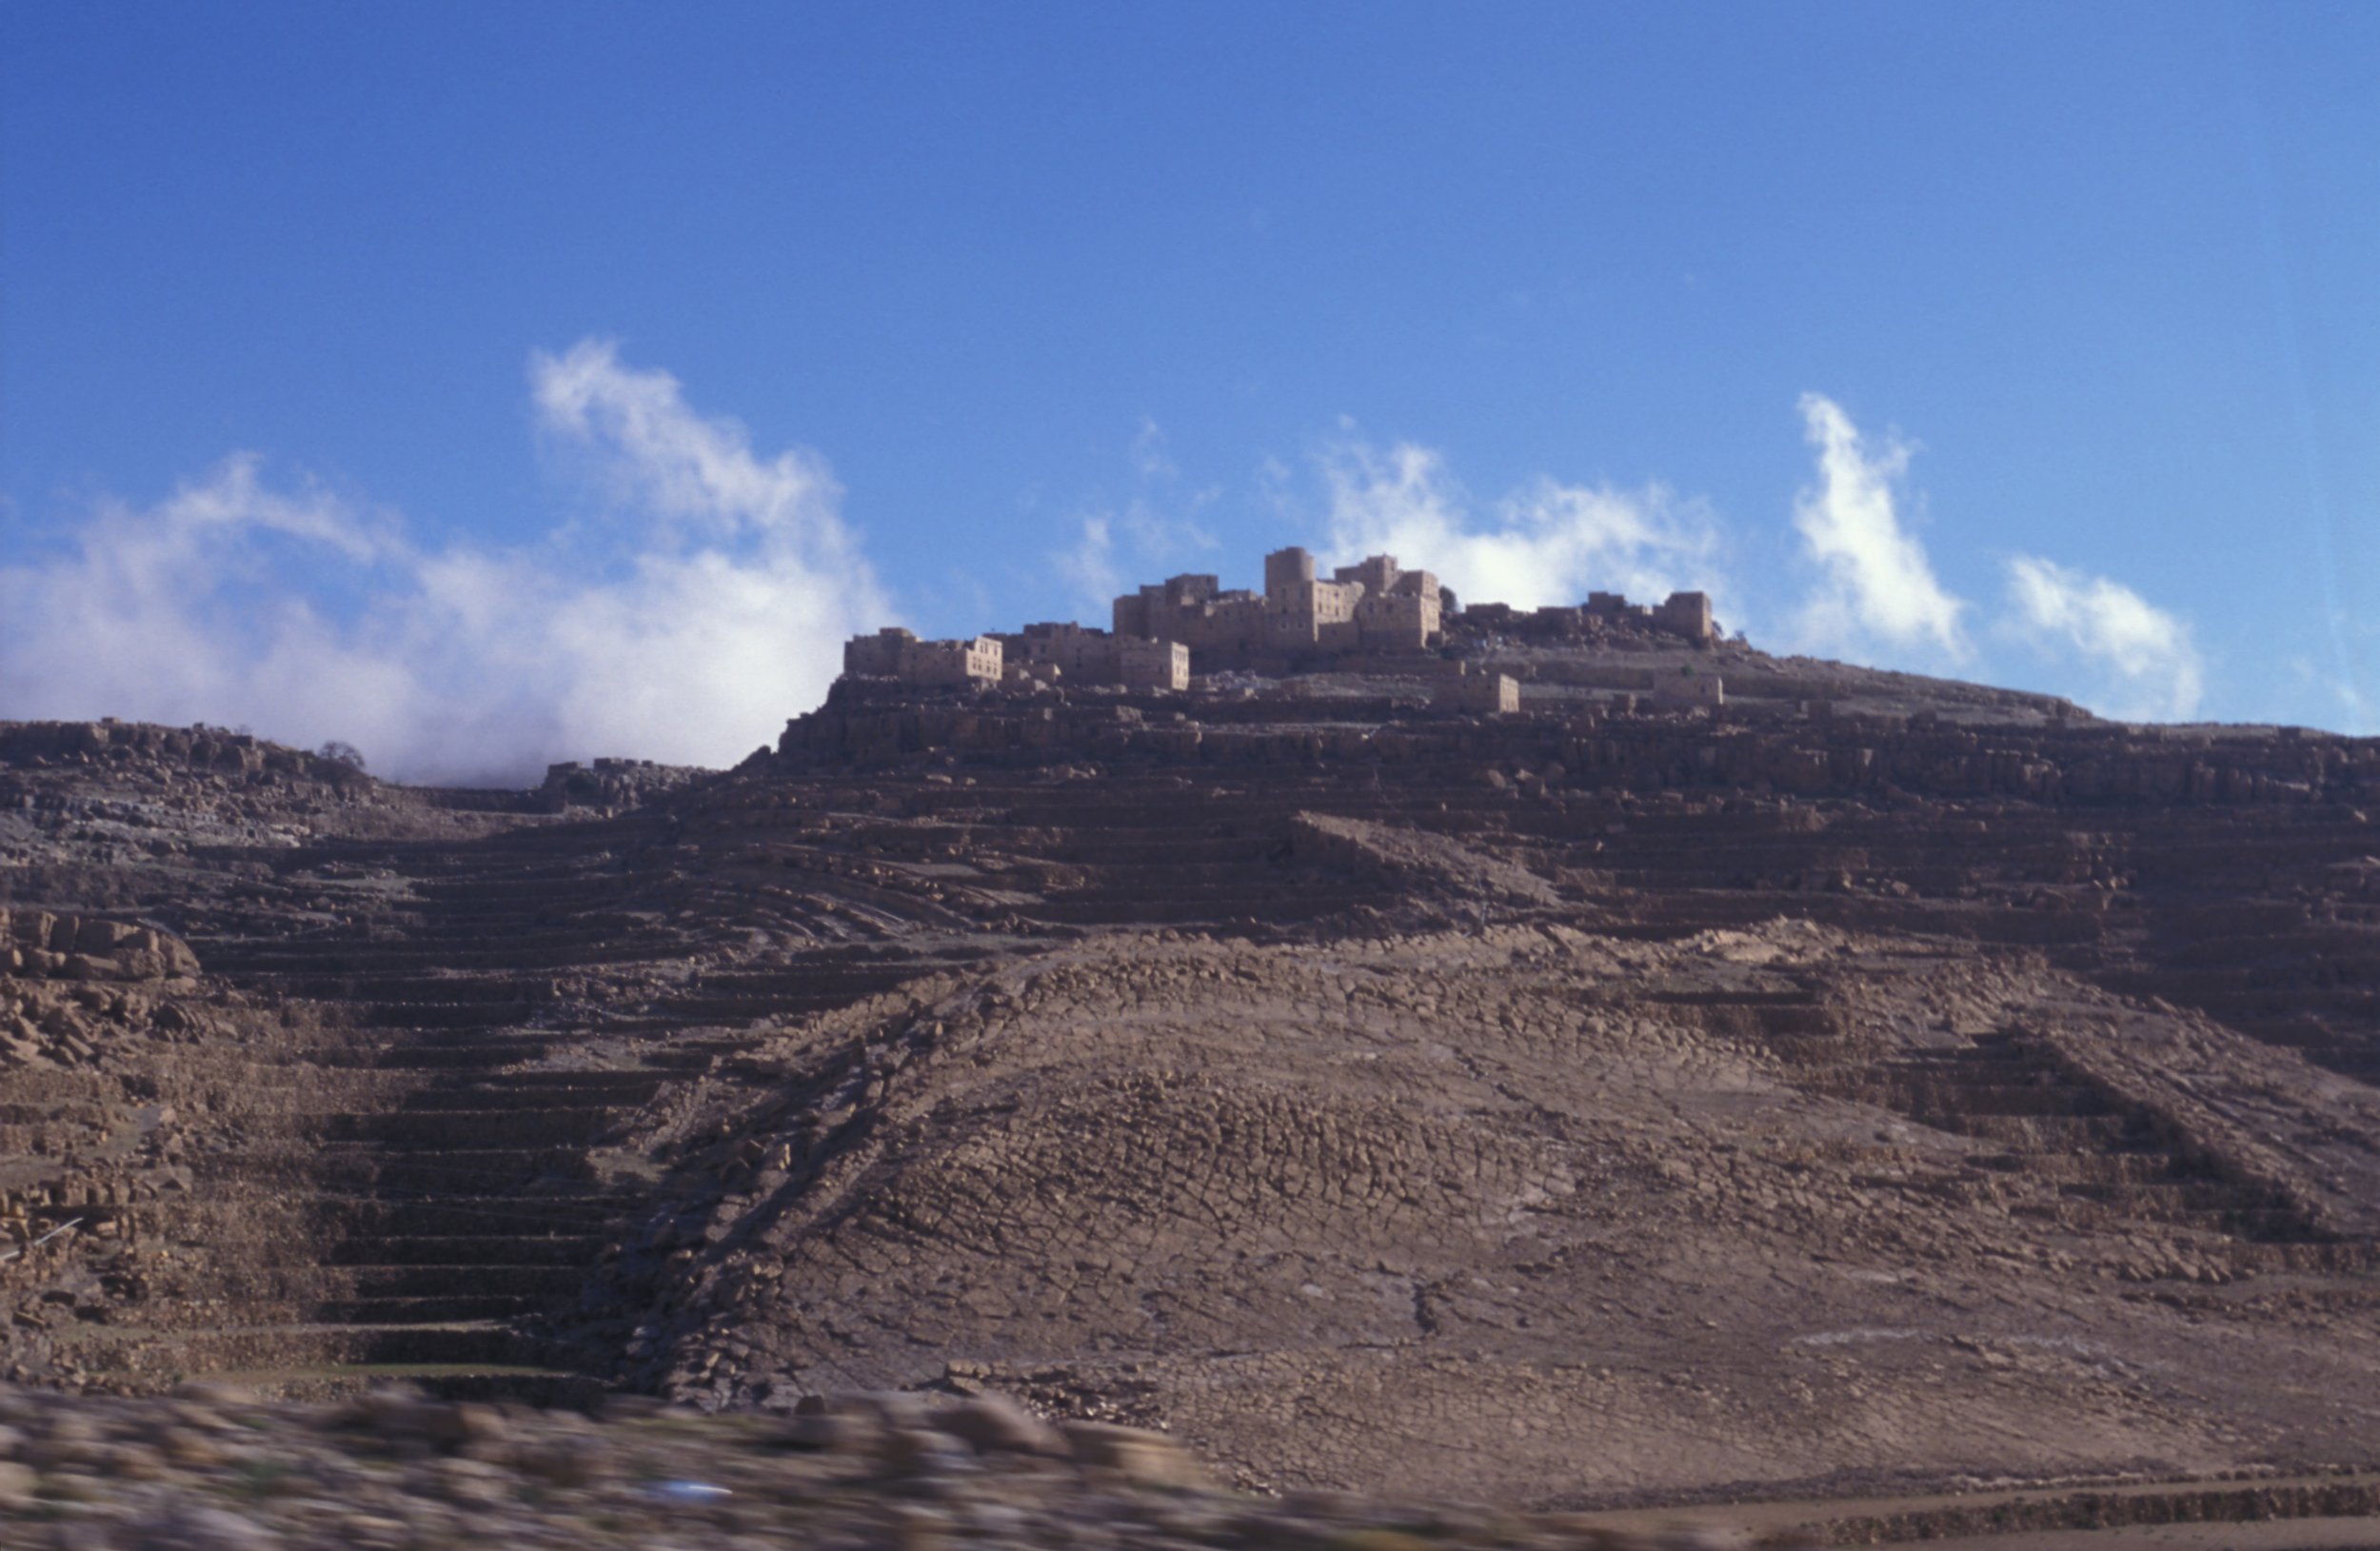 Yemen_mud hill town_MikeTonkin.jpg